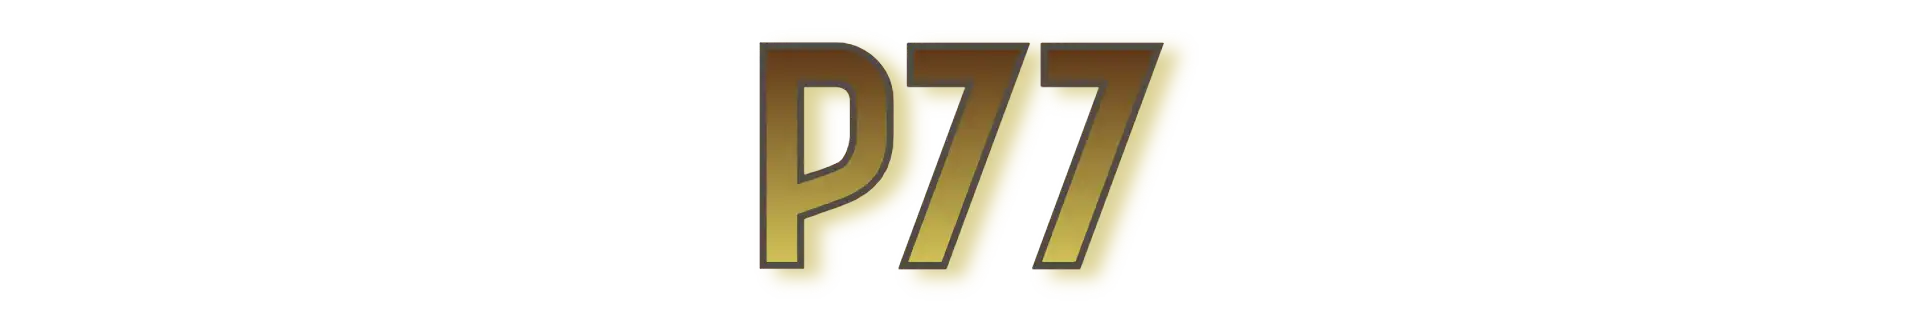 P77